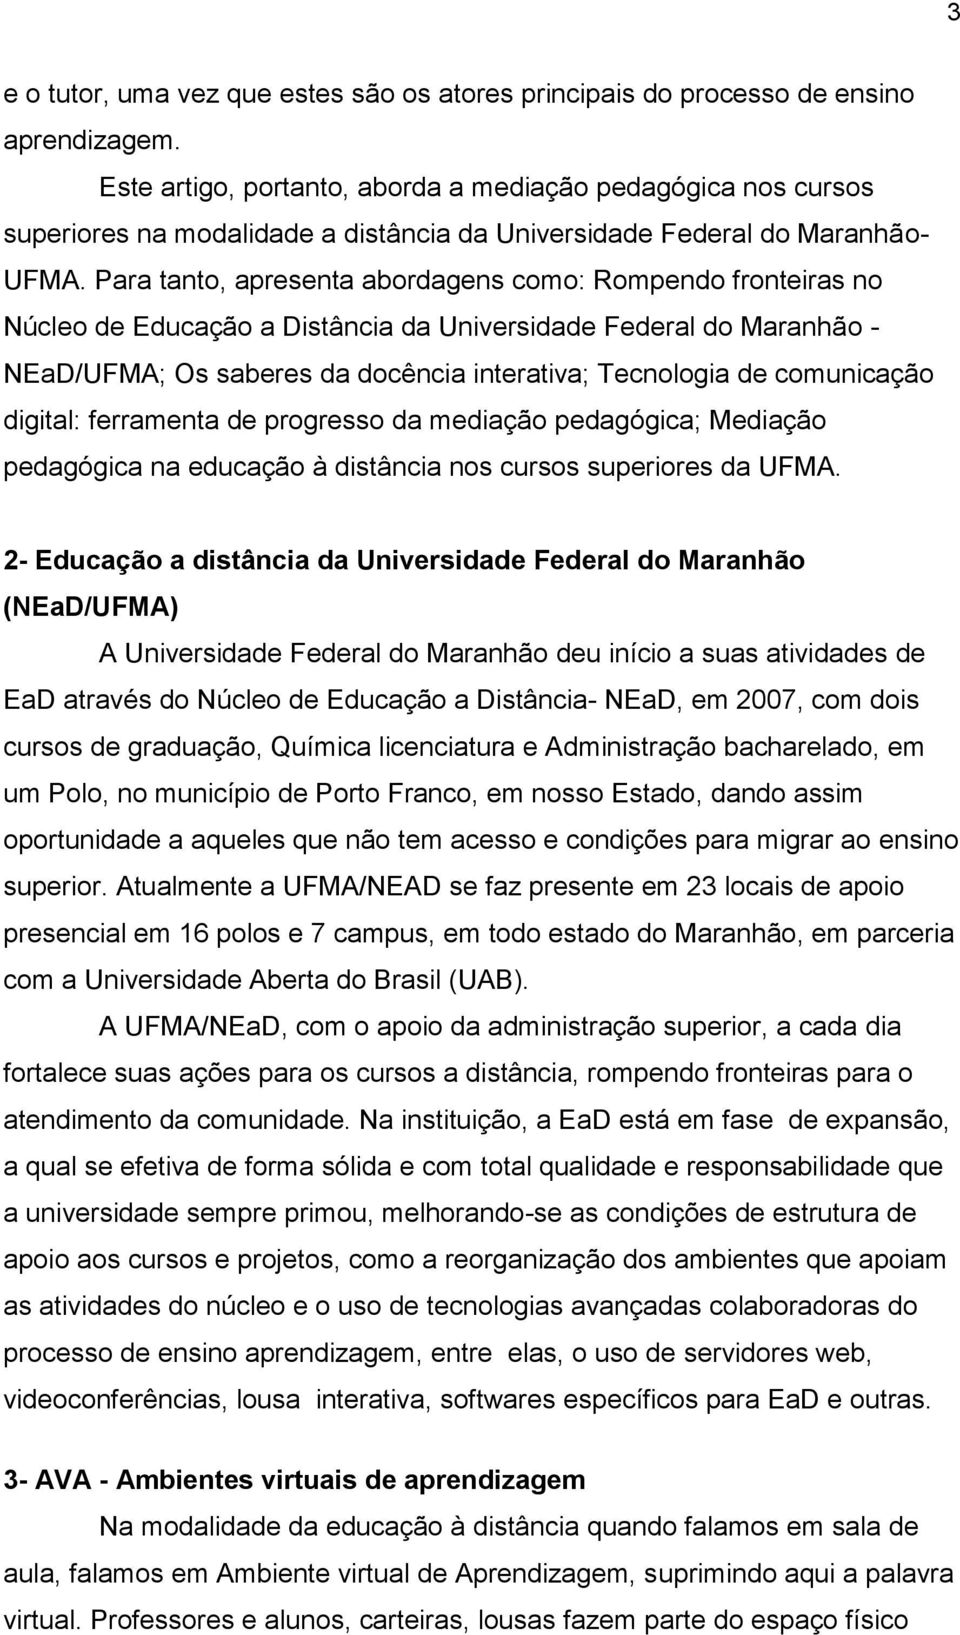 Para tanto, apresenta abordagens como: Rompendo fronteiras no Núcleo de Educação a Distância da Universidade Federal do Maranhão - NEaD/UFMA; Os saberes da docência interativa; Tecnologia de